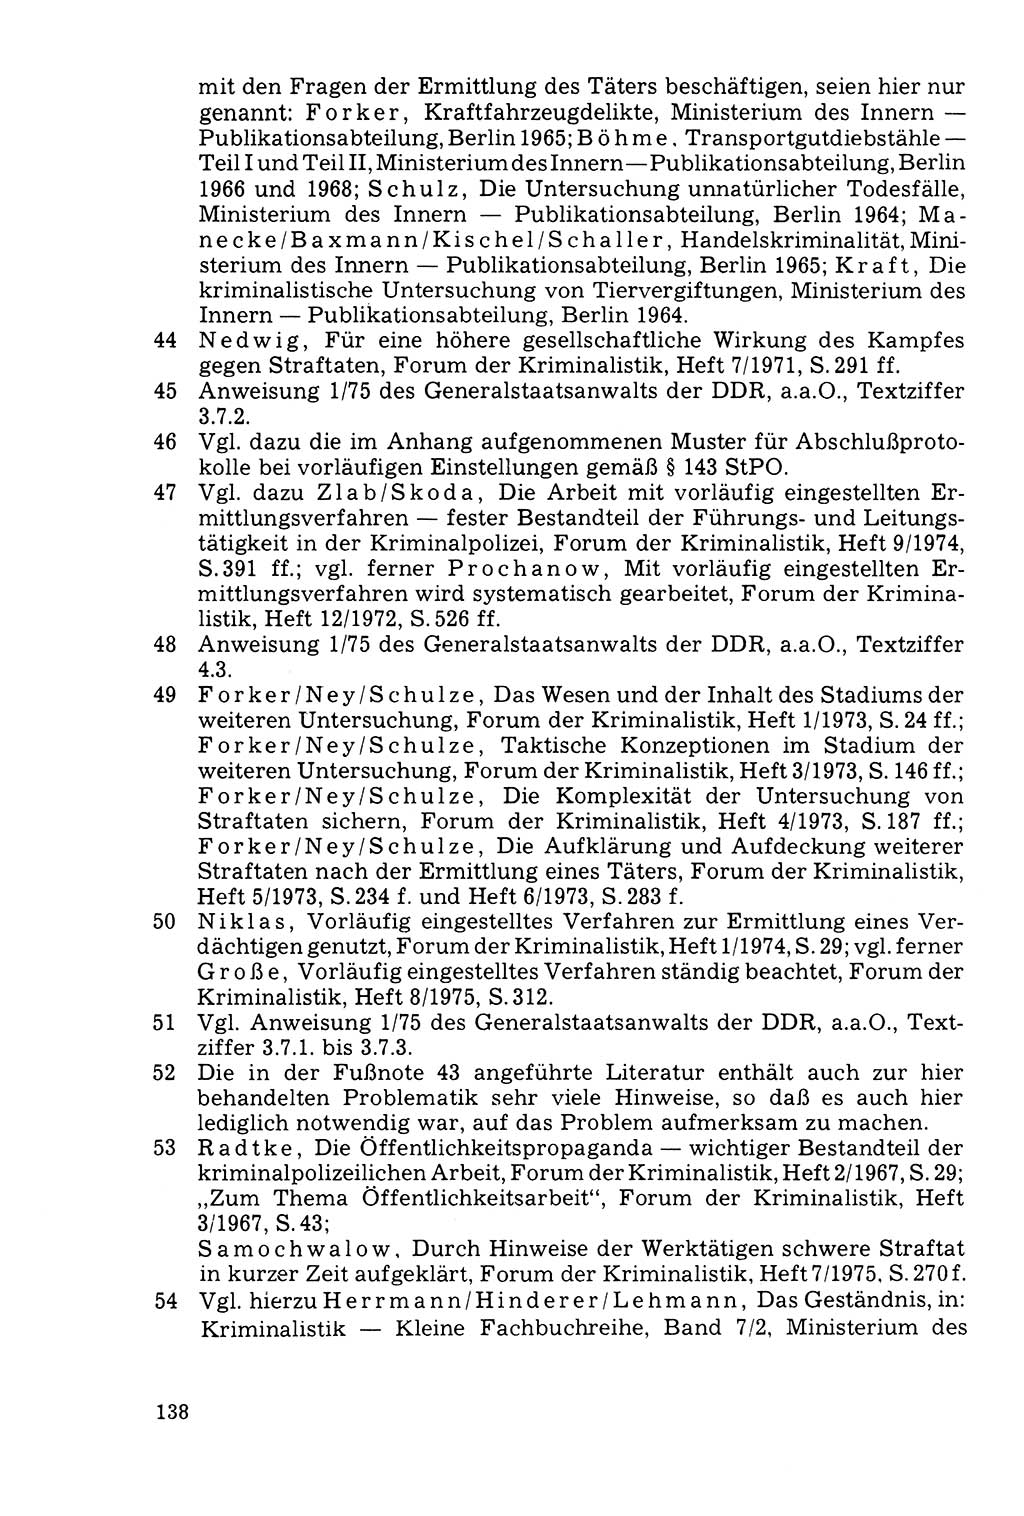 Der Abschluß des Ermittlungsverfahrens [Deutsche Demokratische Republik (DDR)] 1978, Seite 138 (Abschl. EV DDR 1978, S. 138)